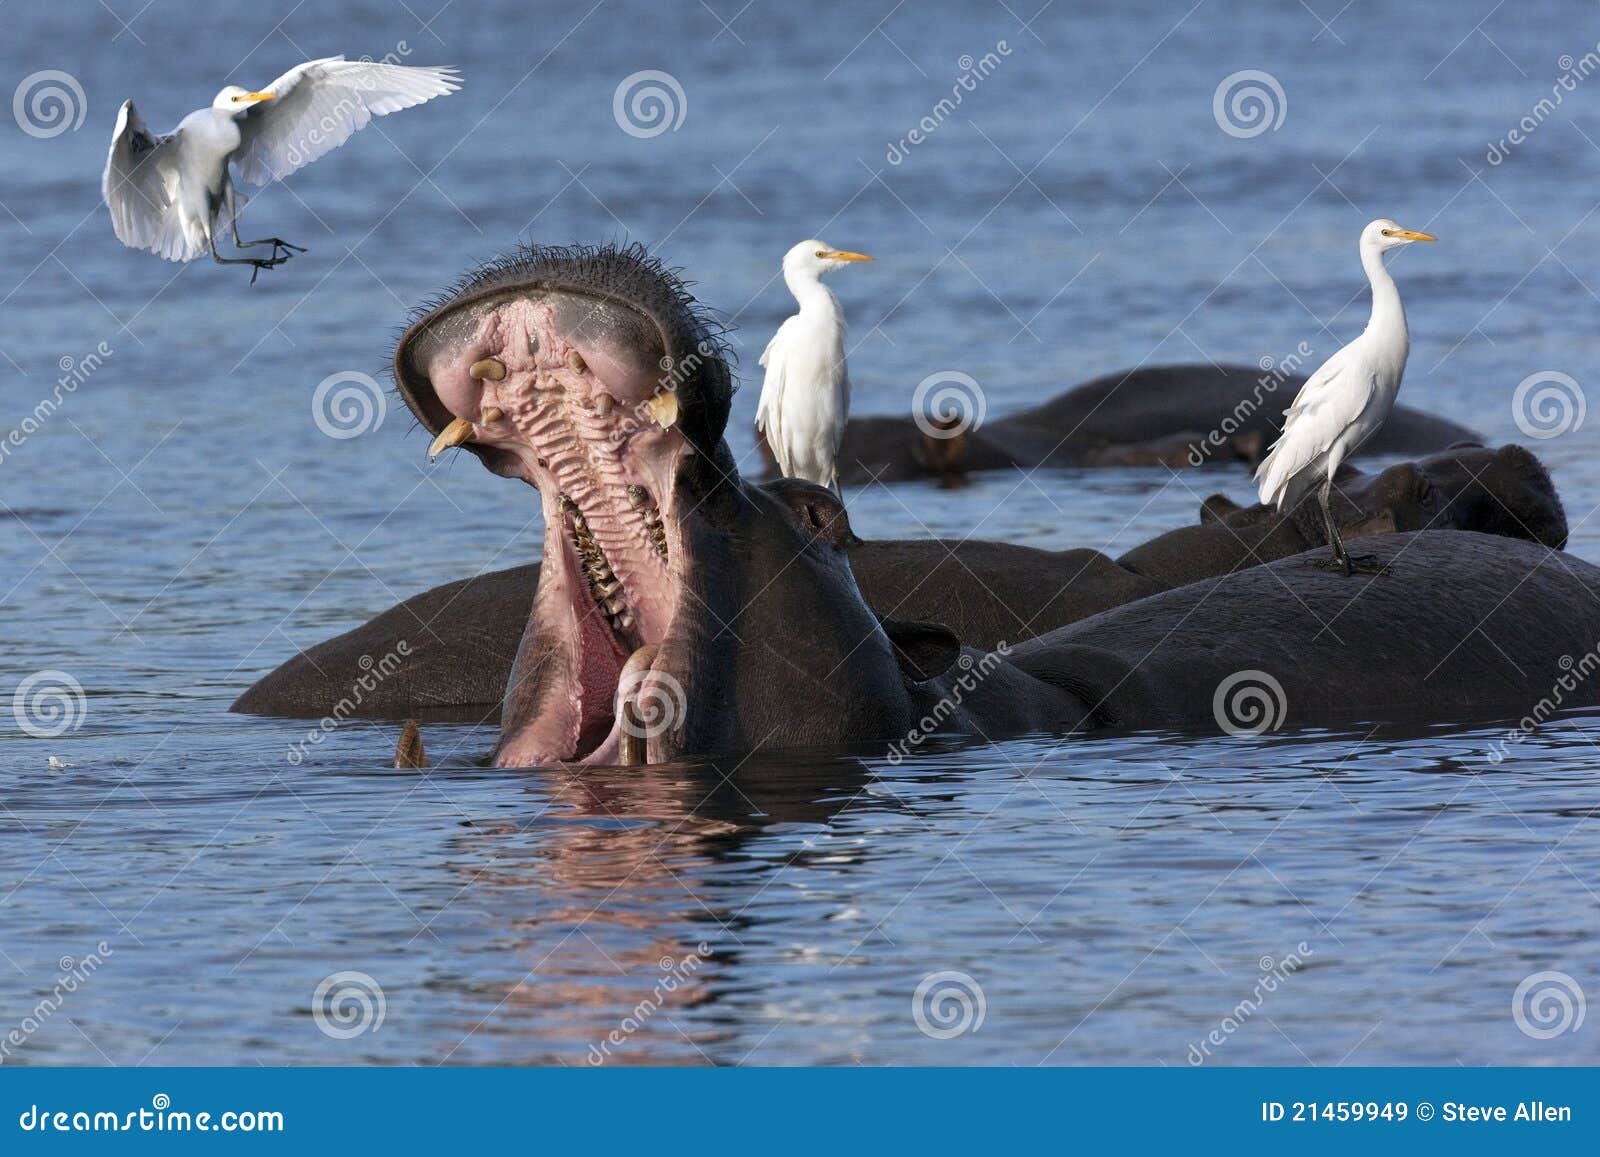 hippopotamus with egrets